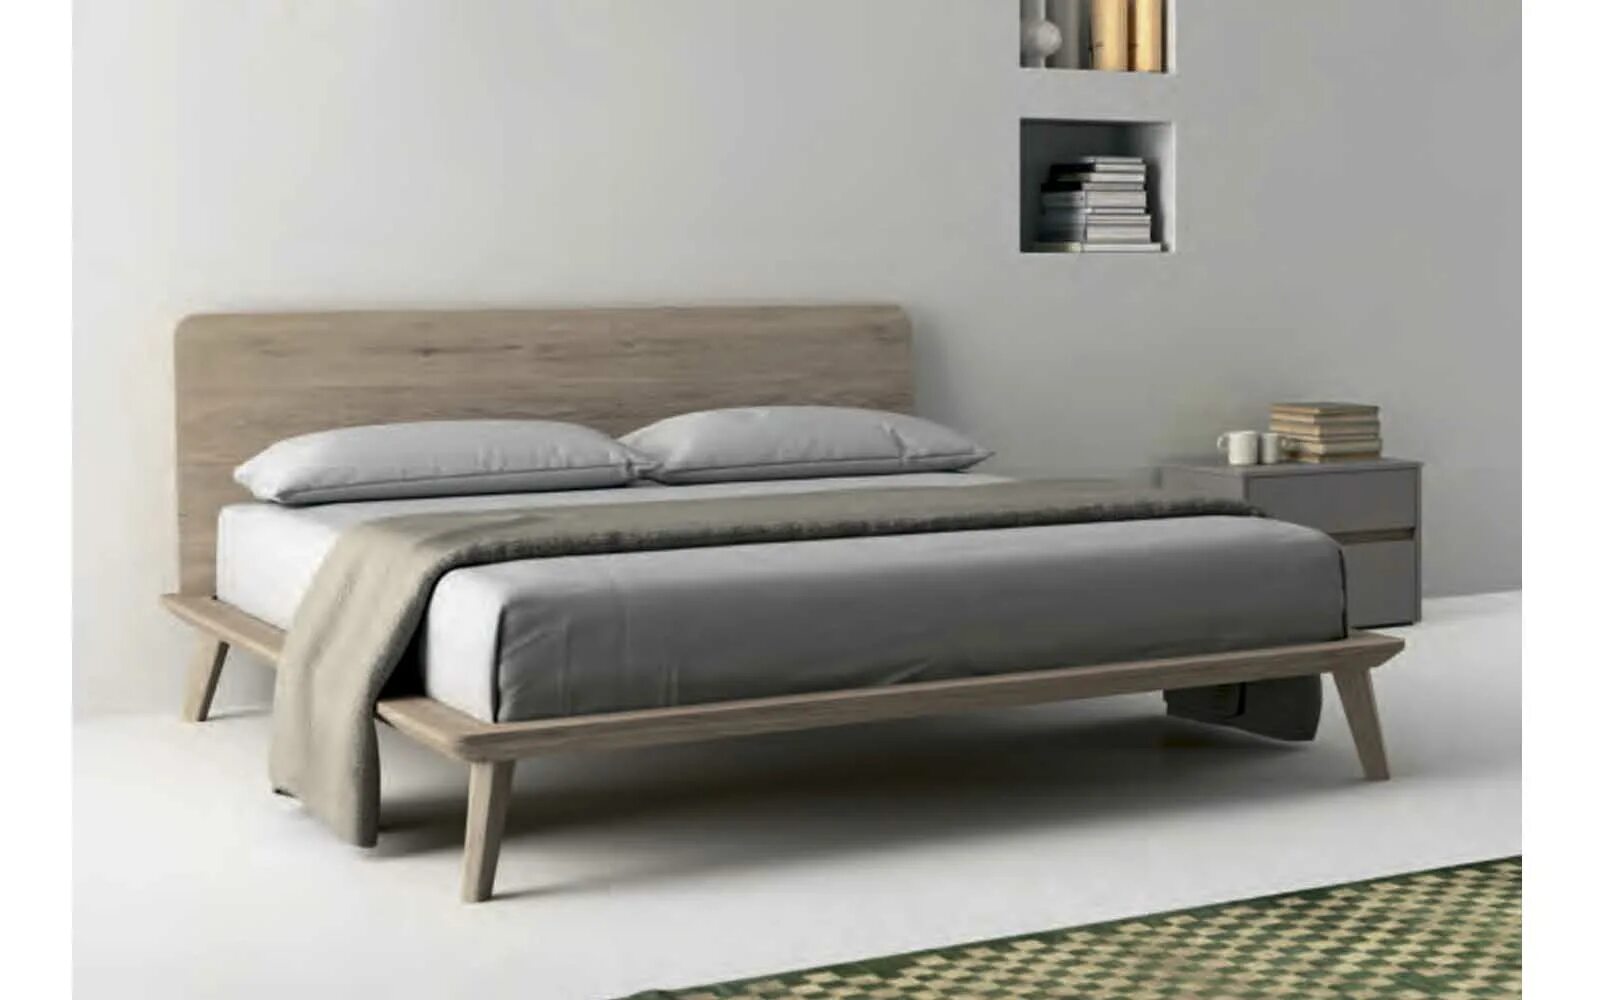 Easy кровати. Dall Agnese мебель. Итальянские кровати каркасы. Кровать Чарли.